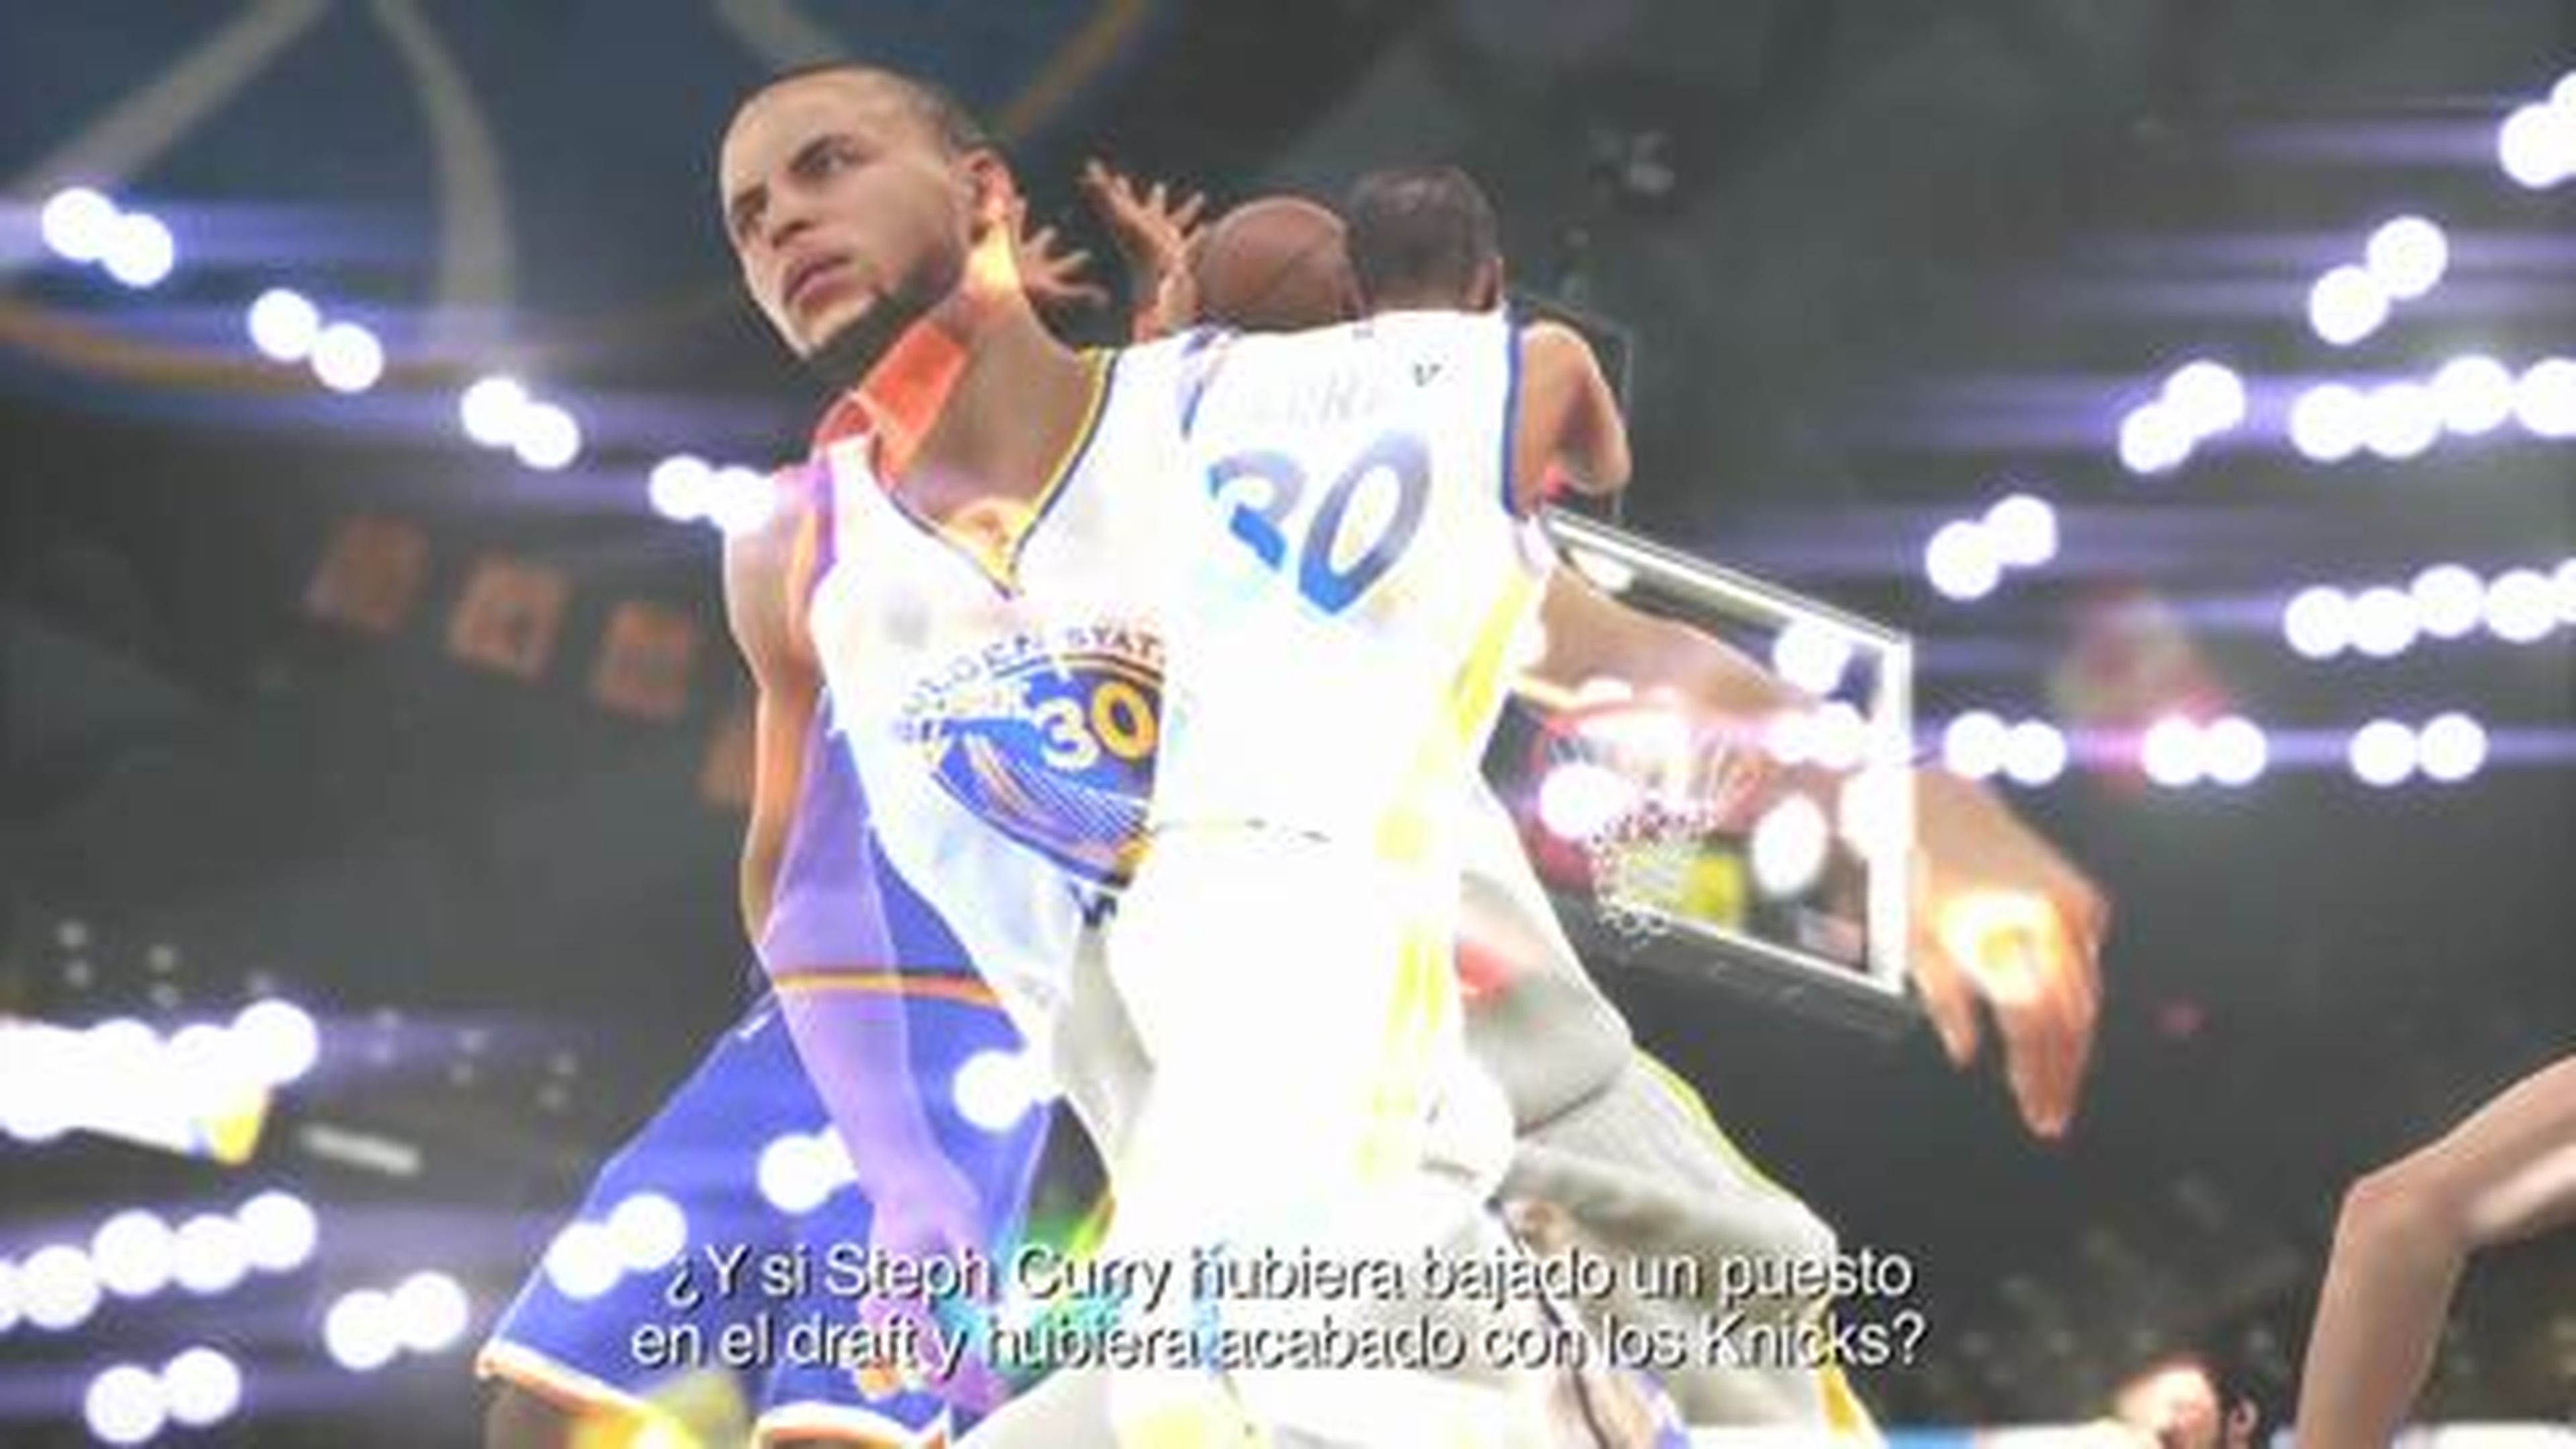 Tráiler “Y si…” de NBA 2K15 en HobbyConsolas.com